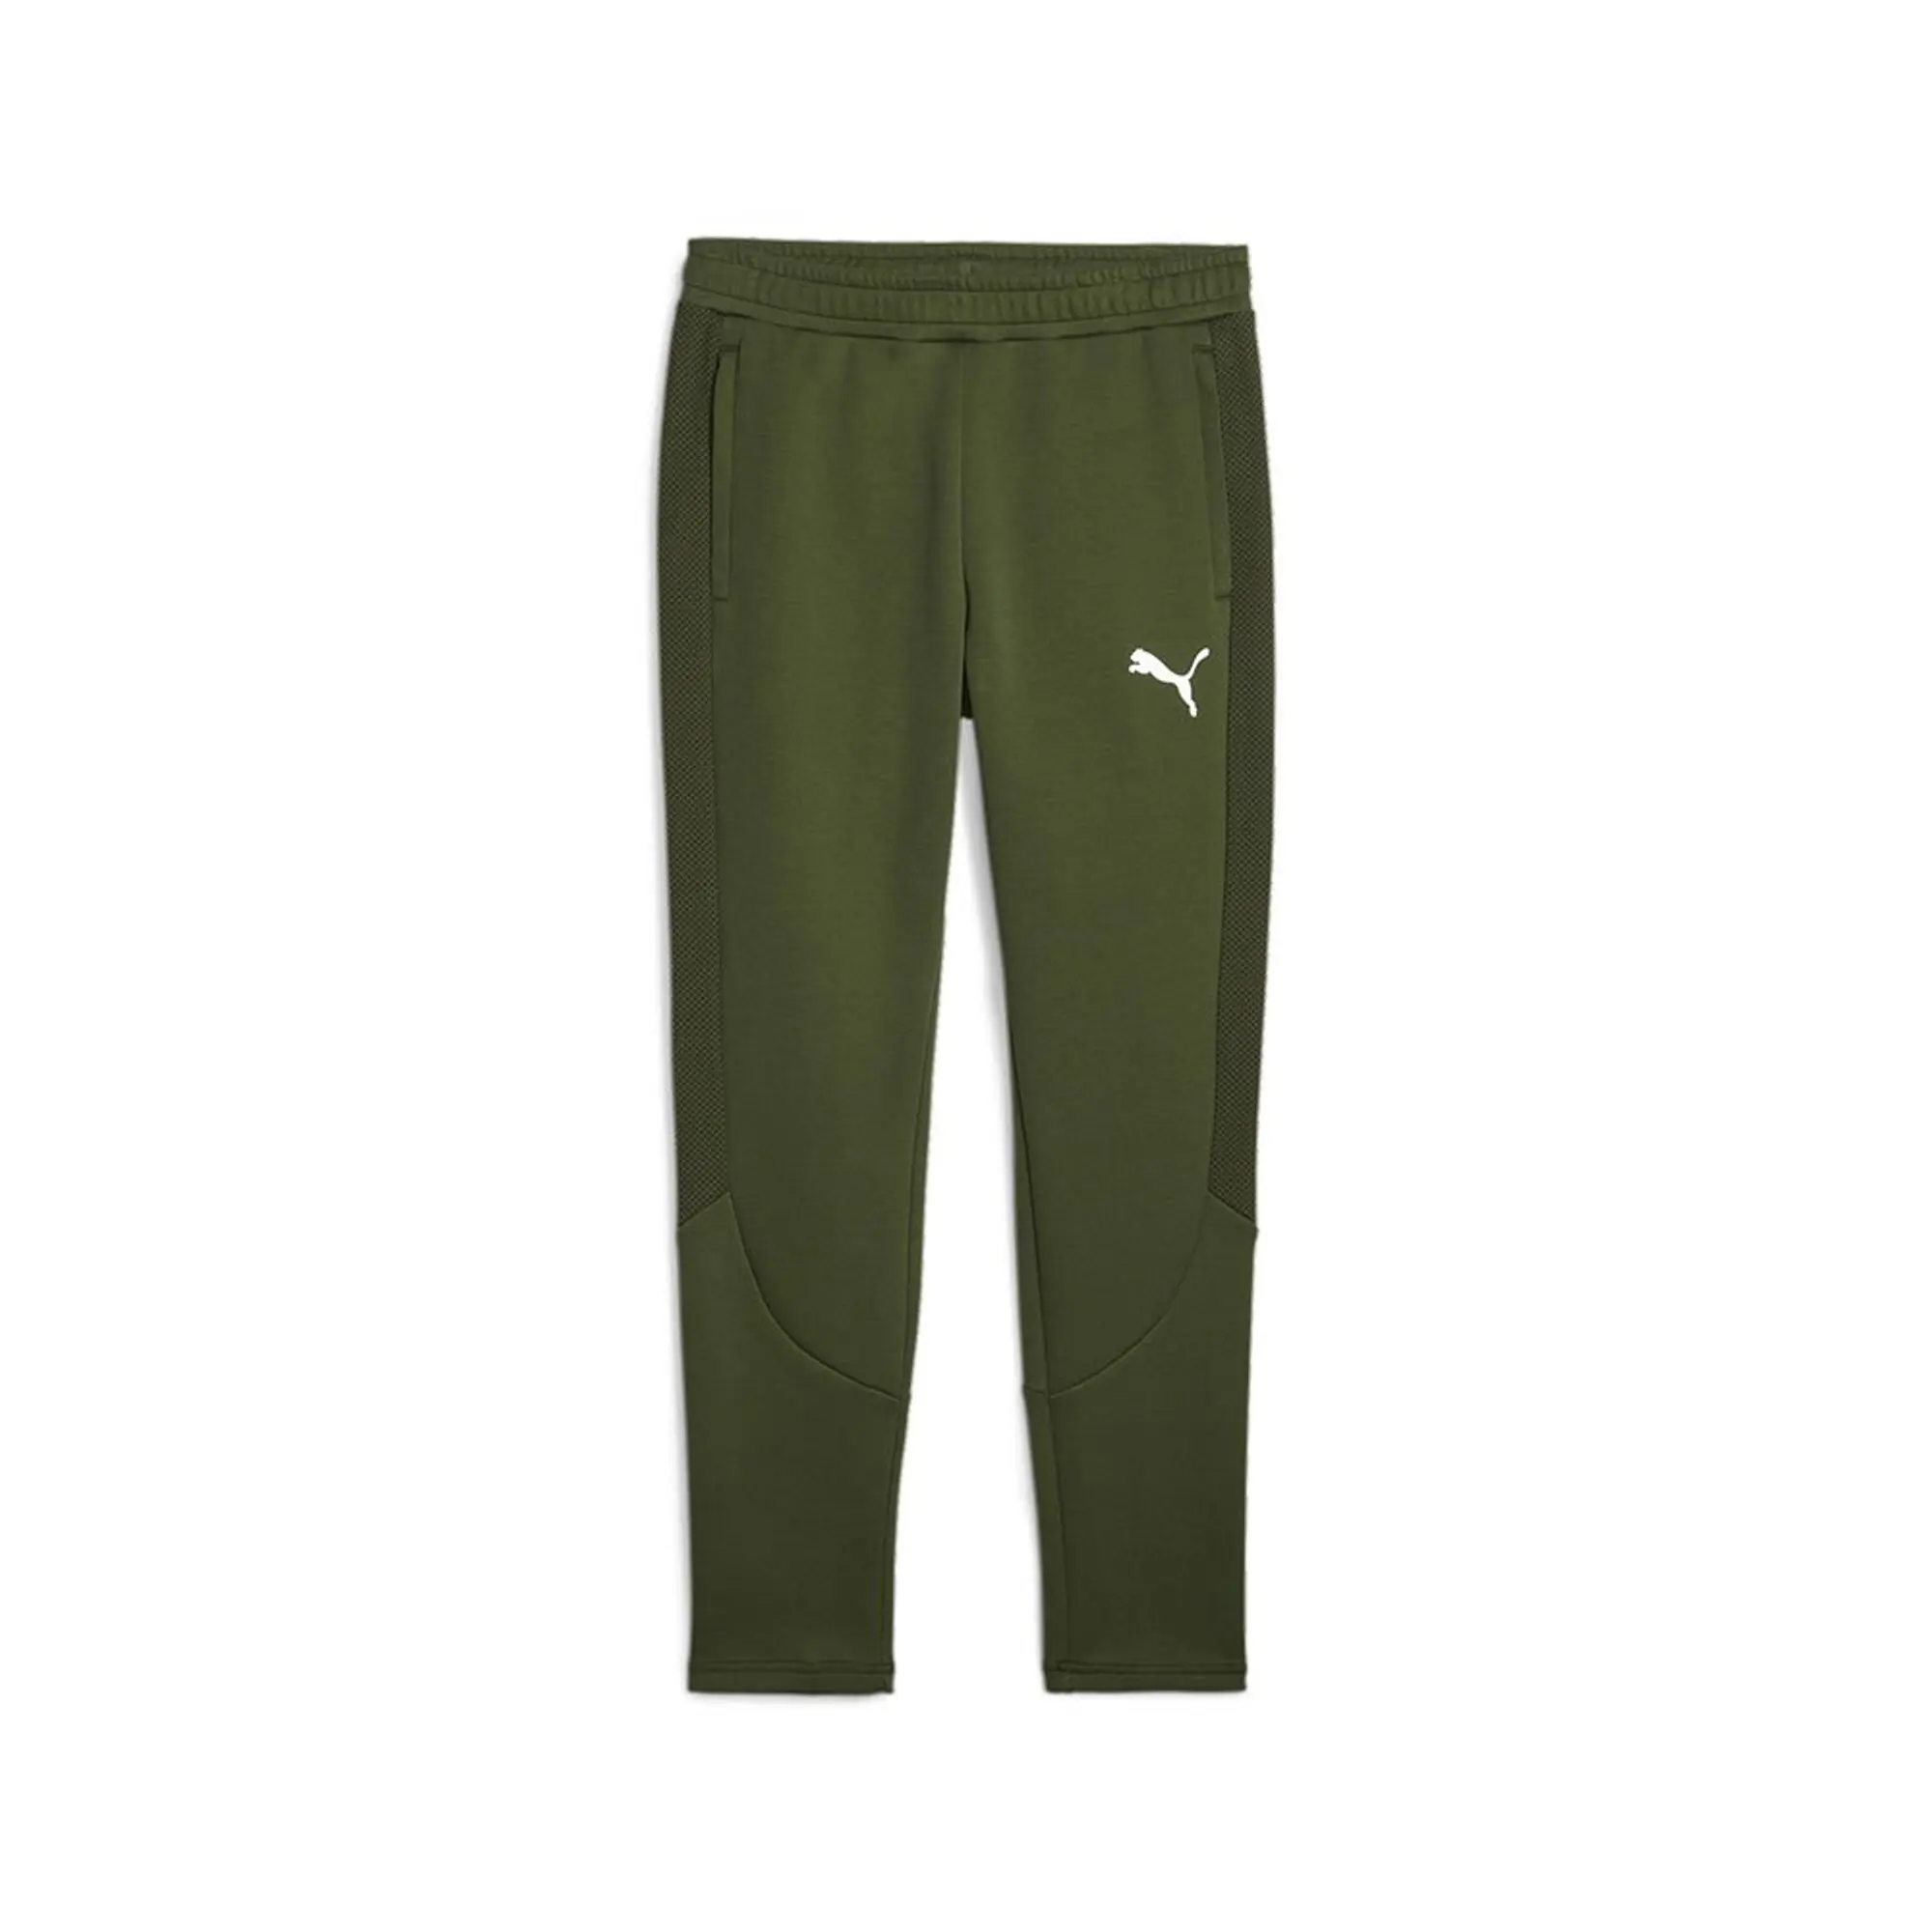 Puma Evostripe Dk Sweat Pants  - Green